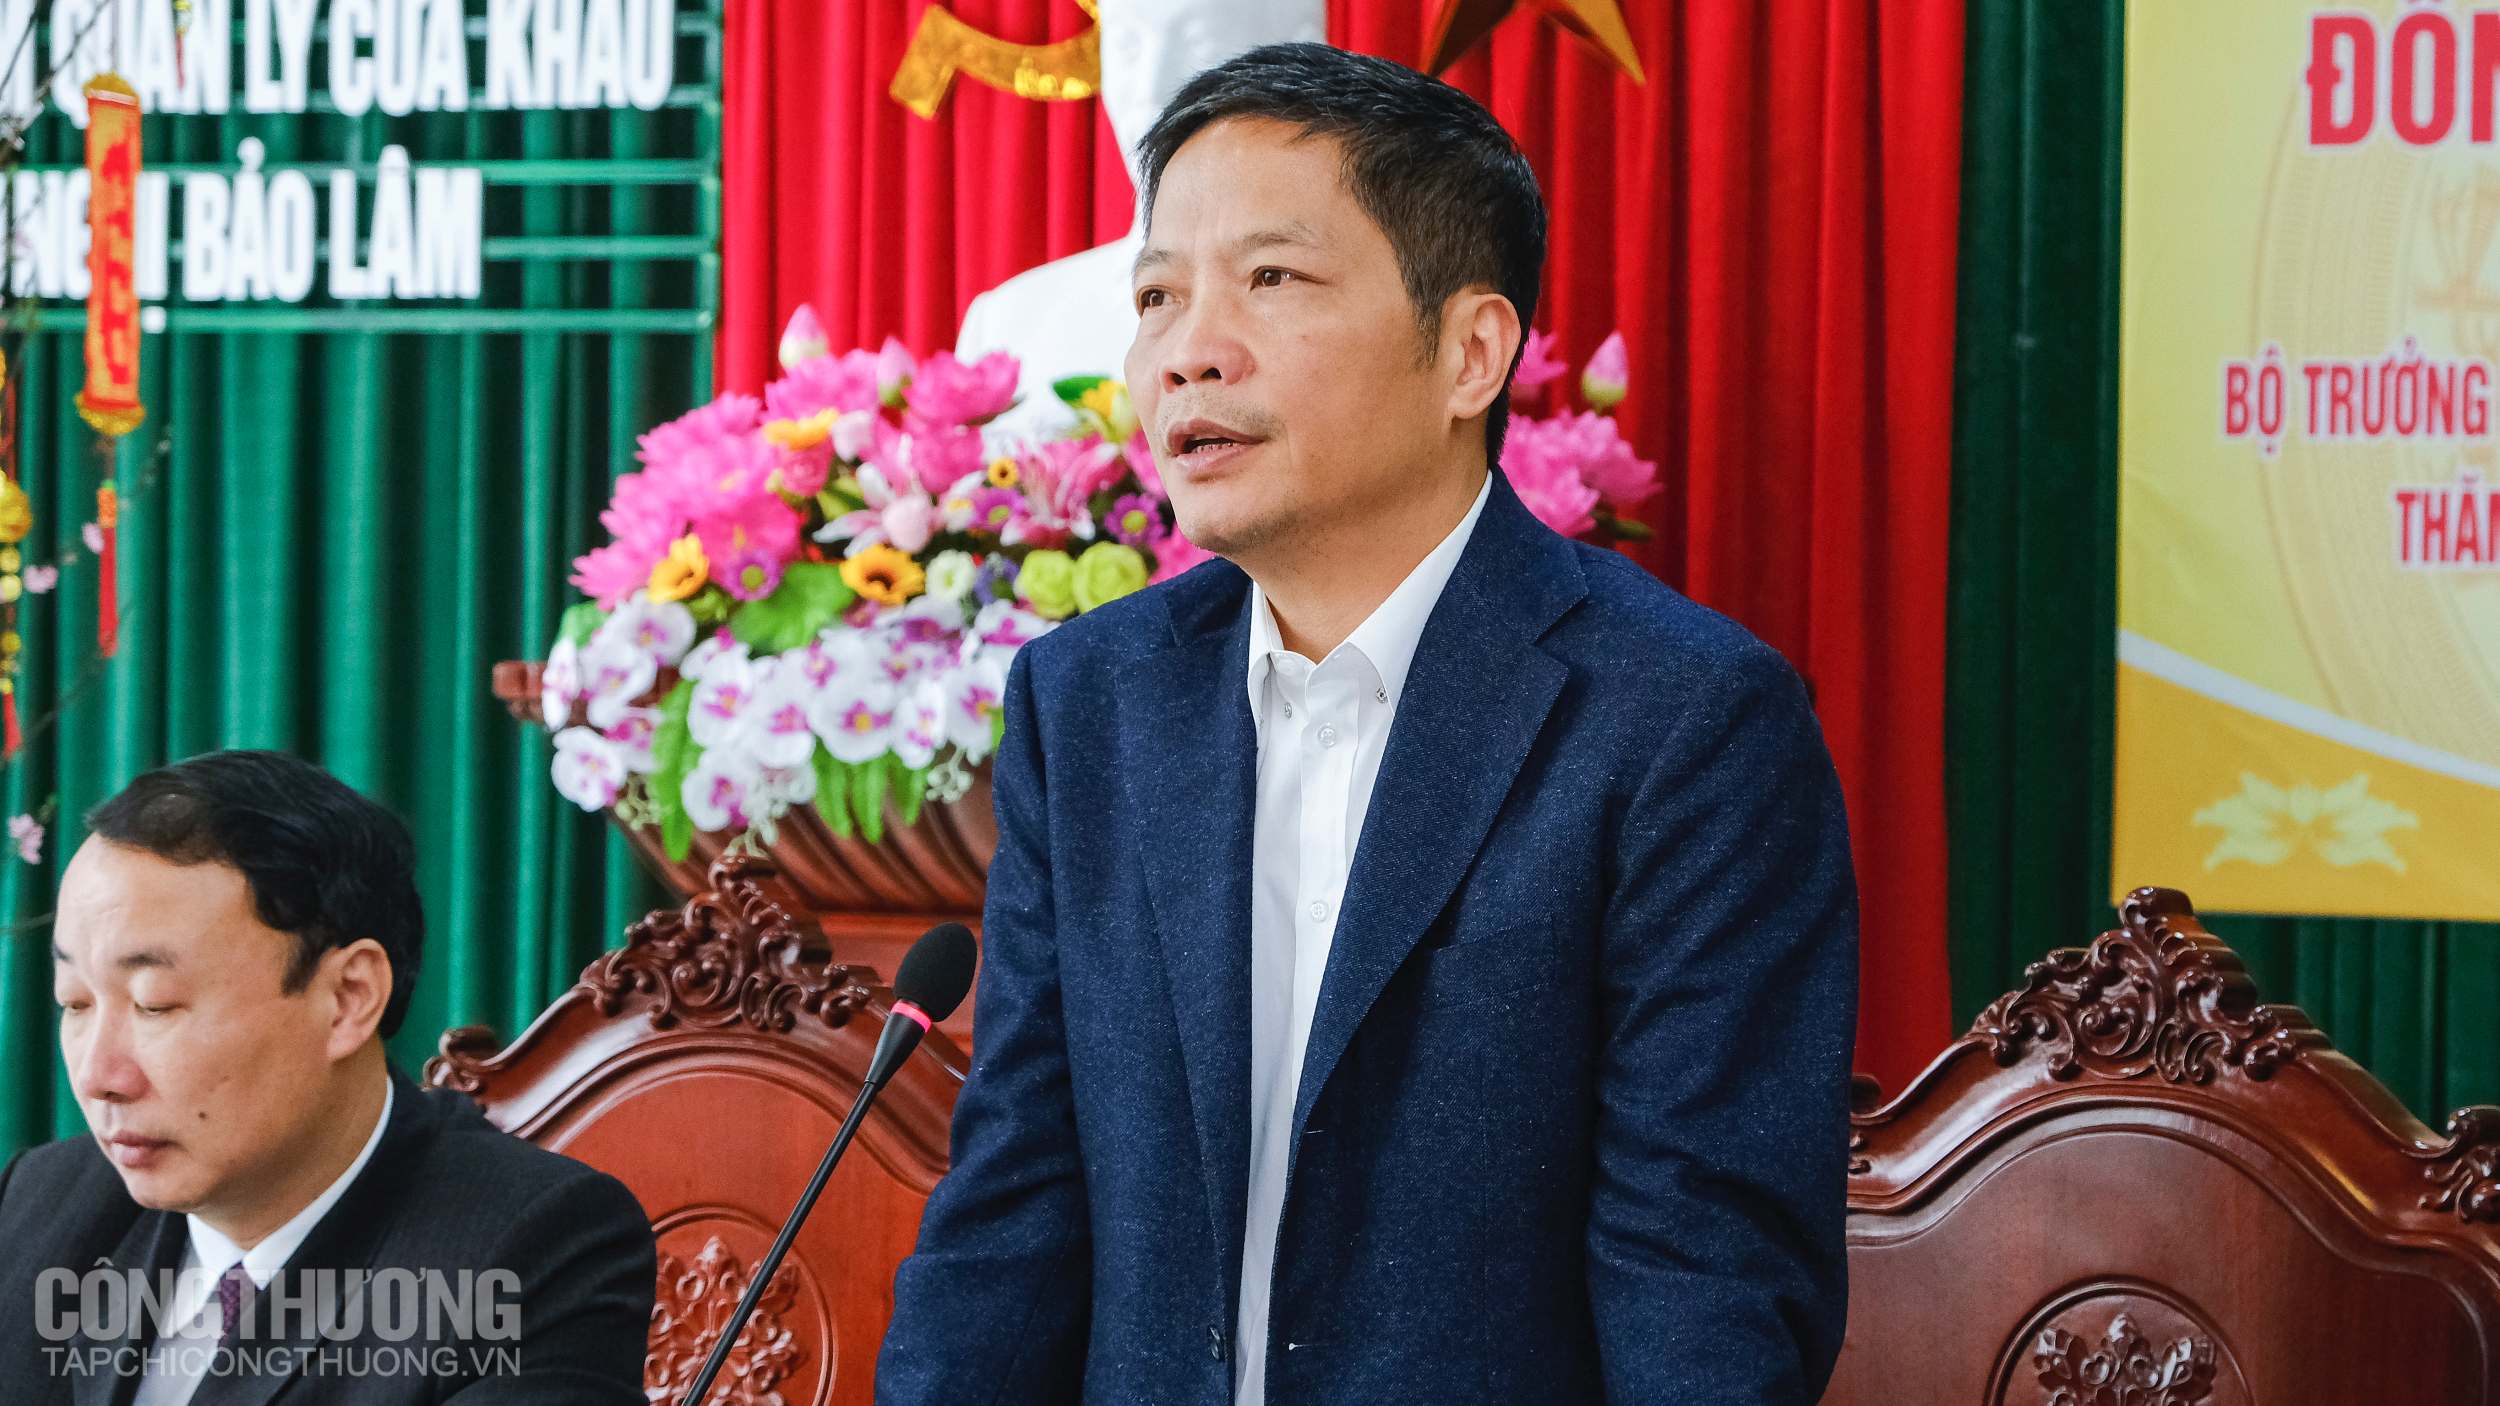 Bộ trưởng Trần Tuấn Anh đánh giá cao những kết quả tích cực của tỉnh Lạng Sơn trong năm 2019